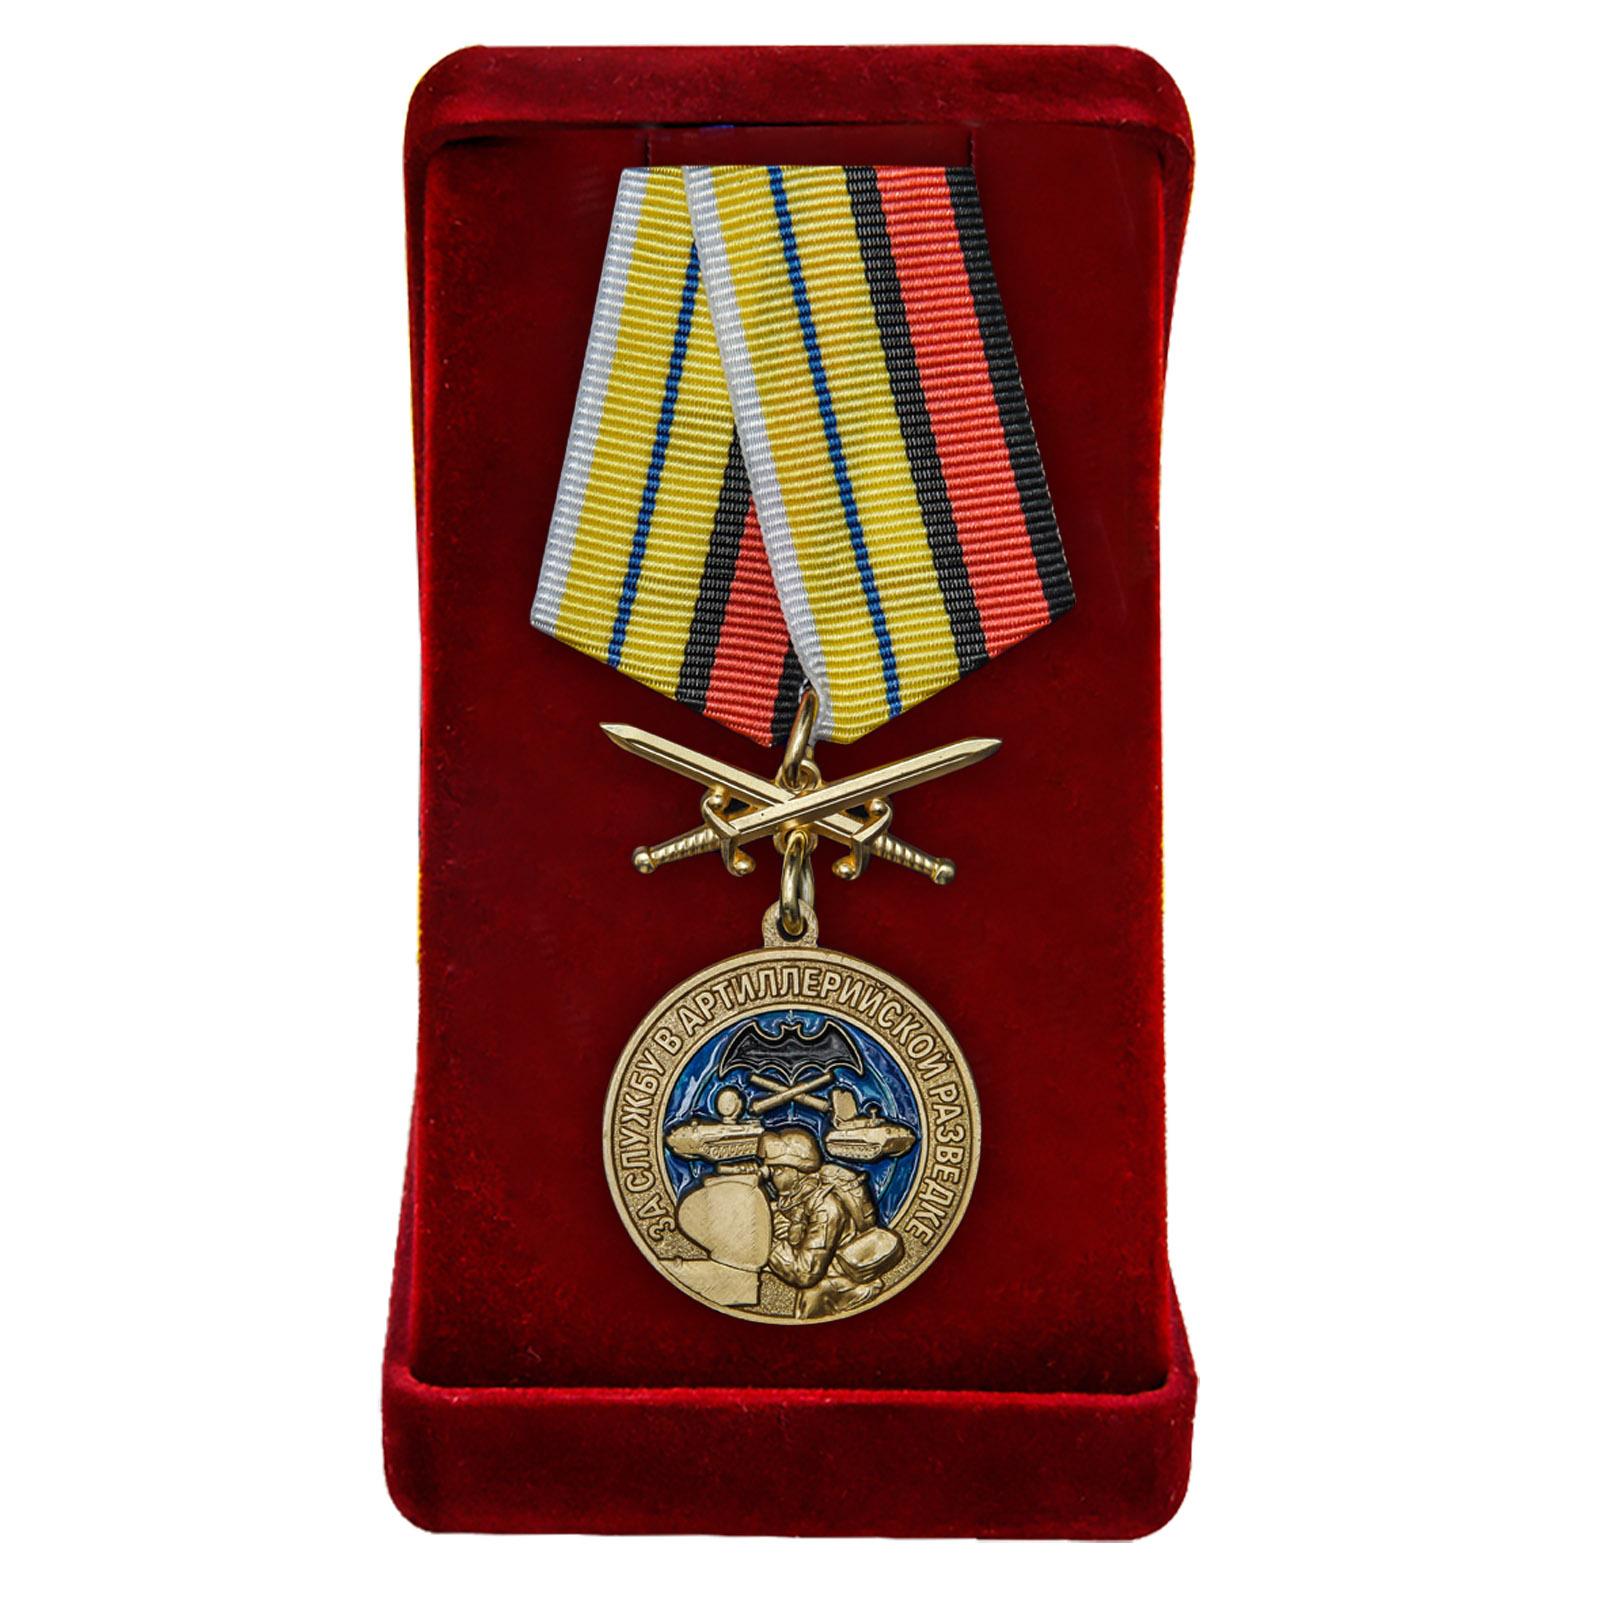 Купить медаль За службу в артиллерийской разведке в подарок выгодно